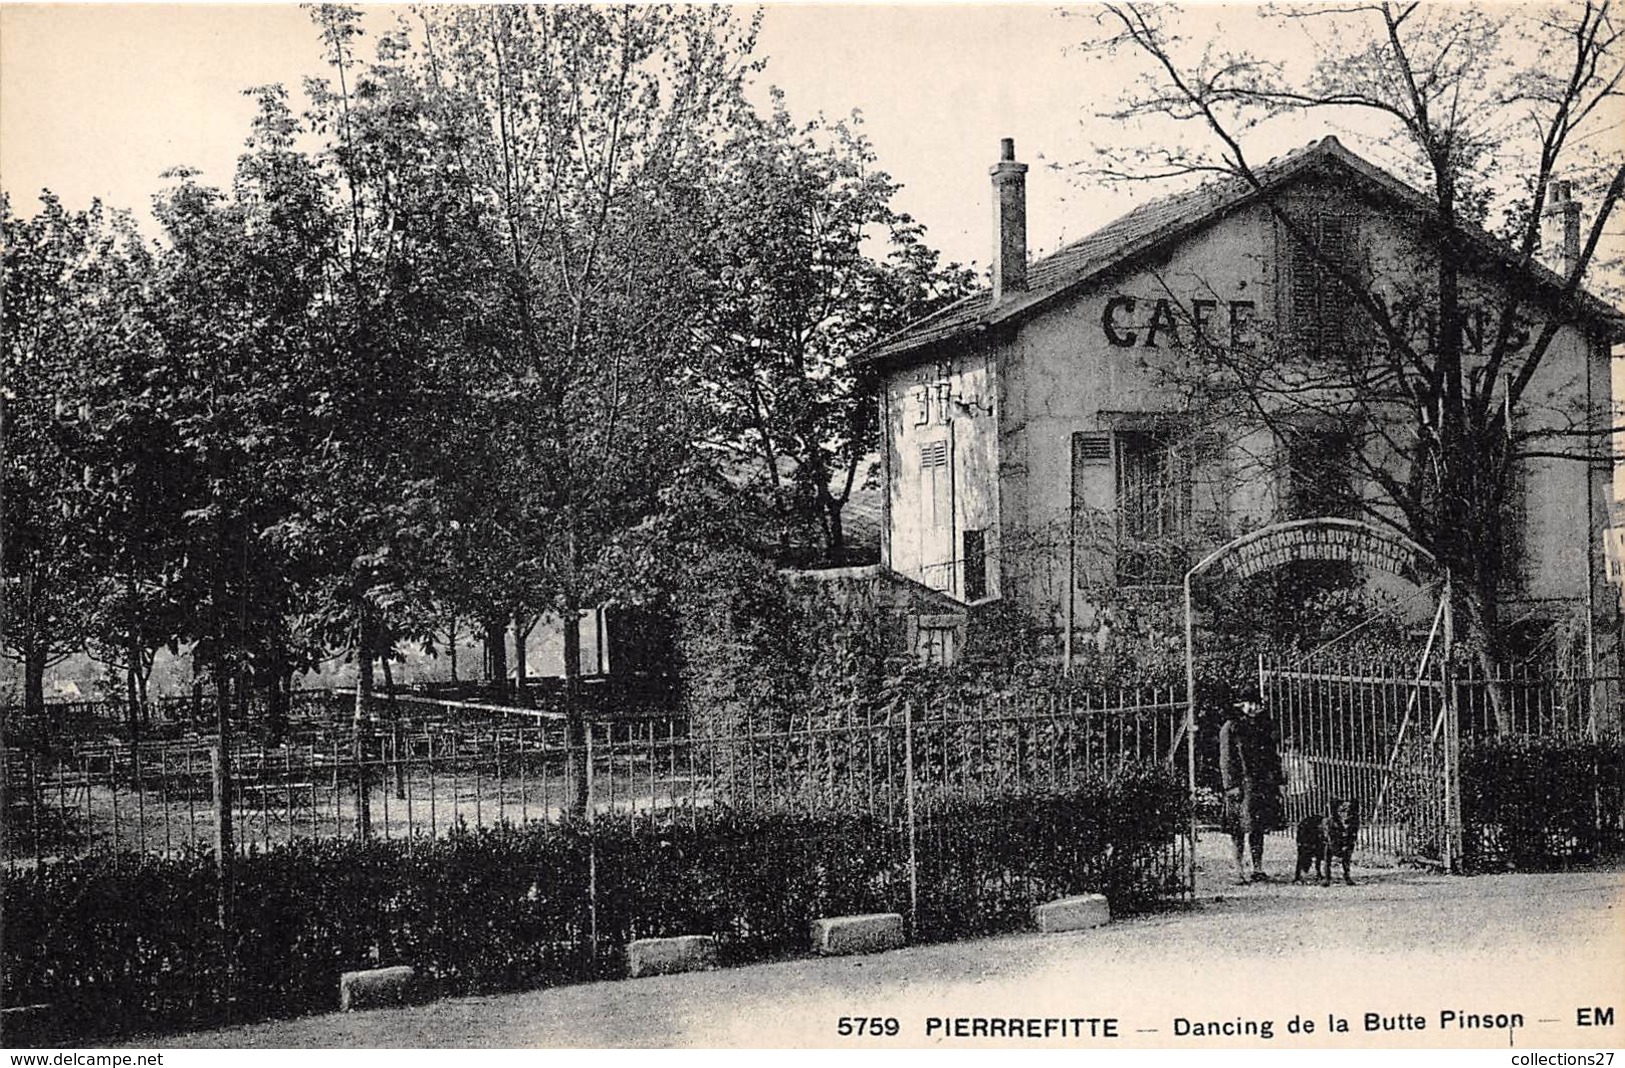 93-PIERREFITTE, DANSING DU LA BUTE PINSON - Pierrefitte Sur Seine